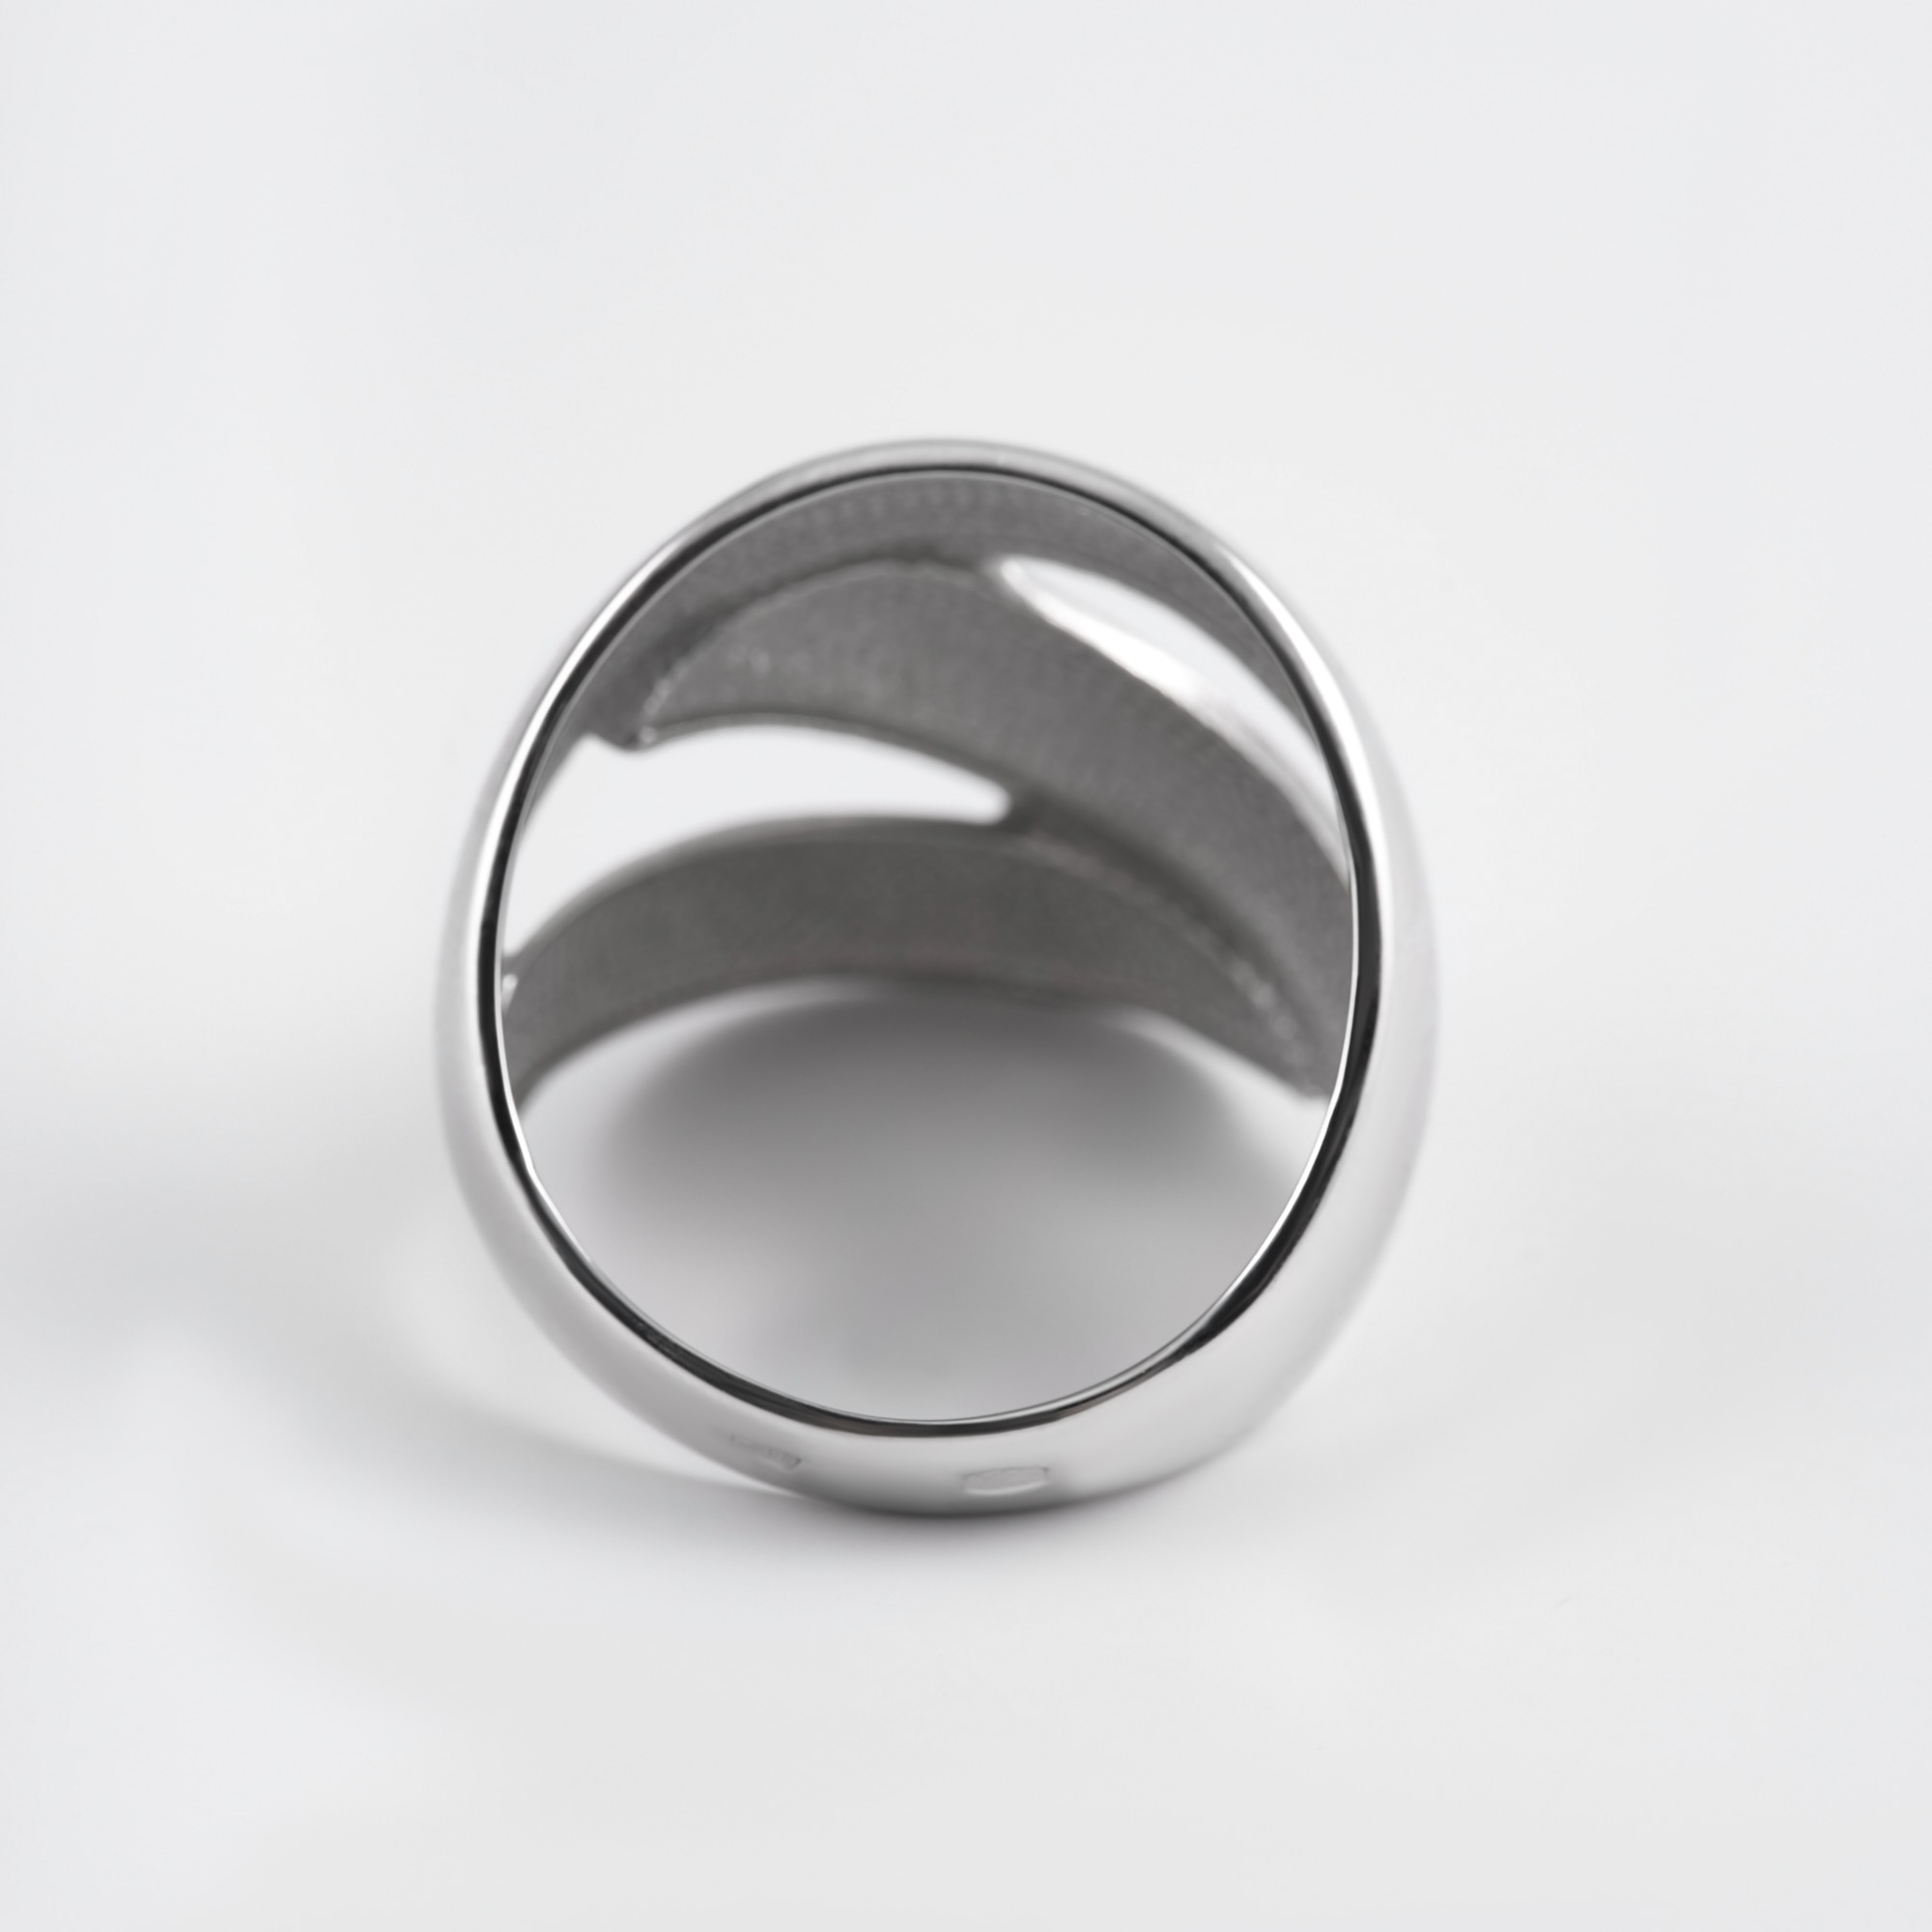 Серебряное кольцо Дельта (delta) ДП211463С, размеры от 16.5 до 22